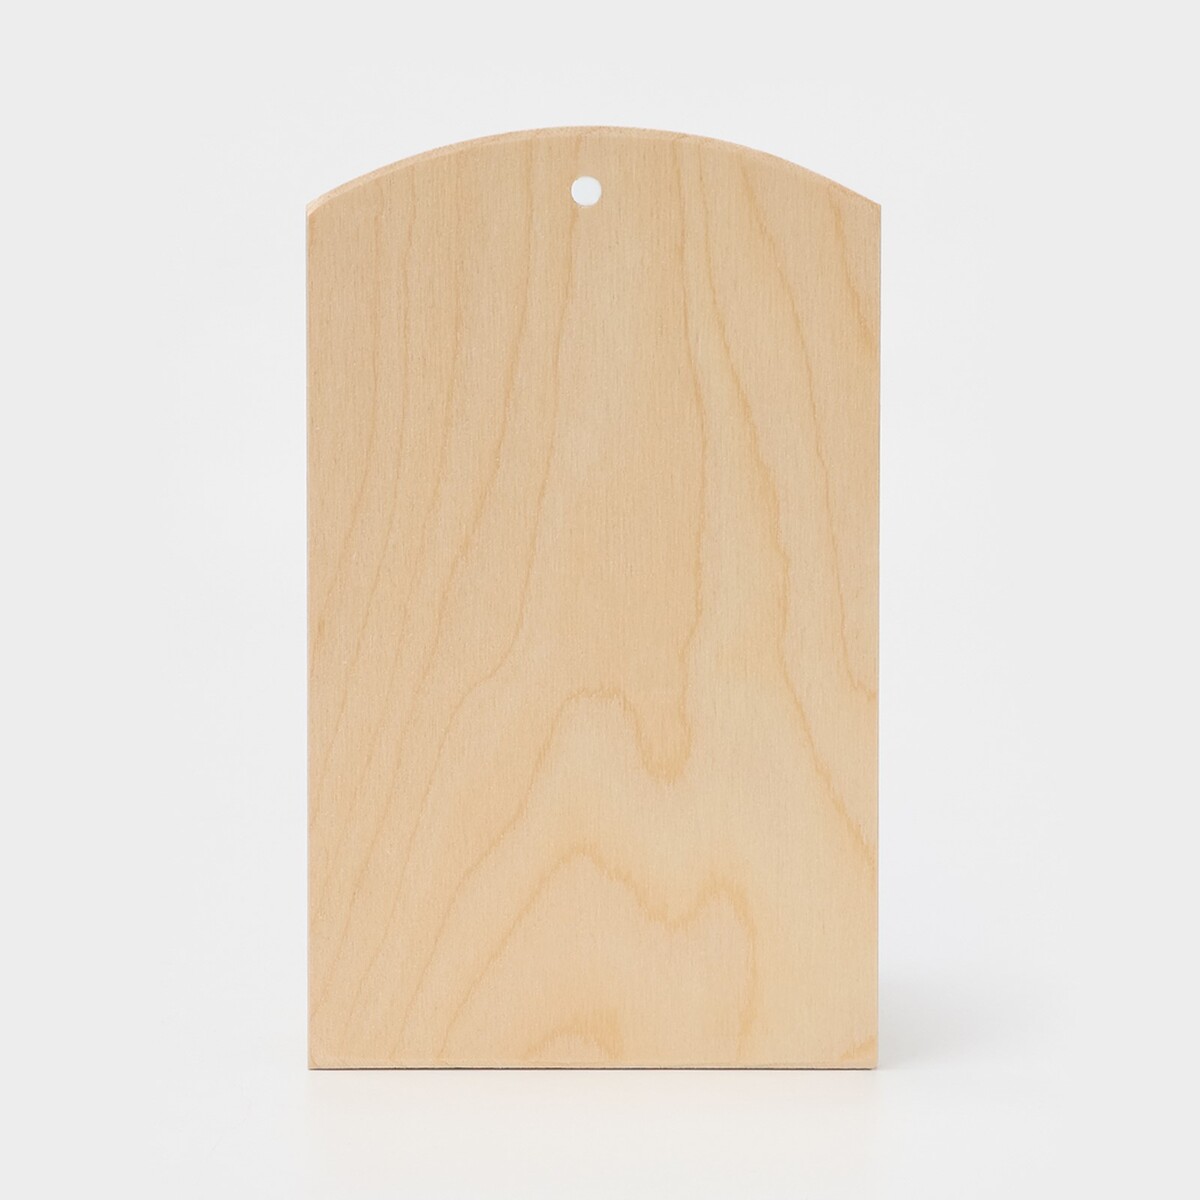 Доска разделочная деревянная с отверстием доляна, 25×15×0,6 см, фанера доска разделочная деревянная с отверстием доляна 25×15×0 6 см фанера